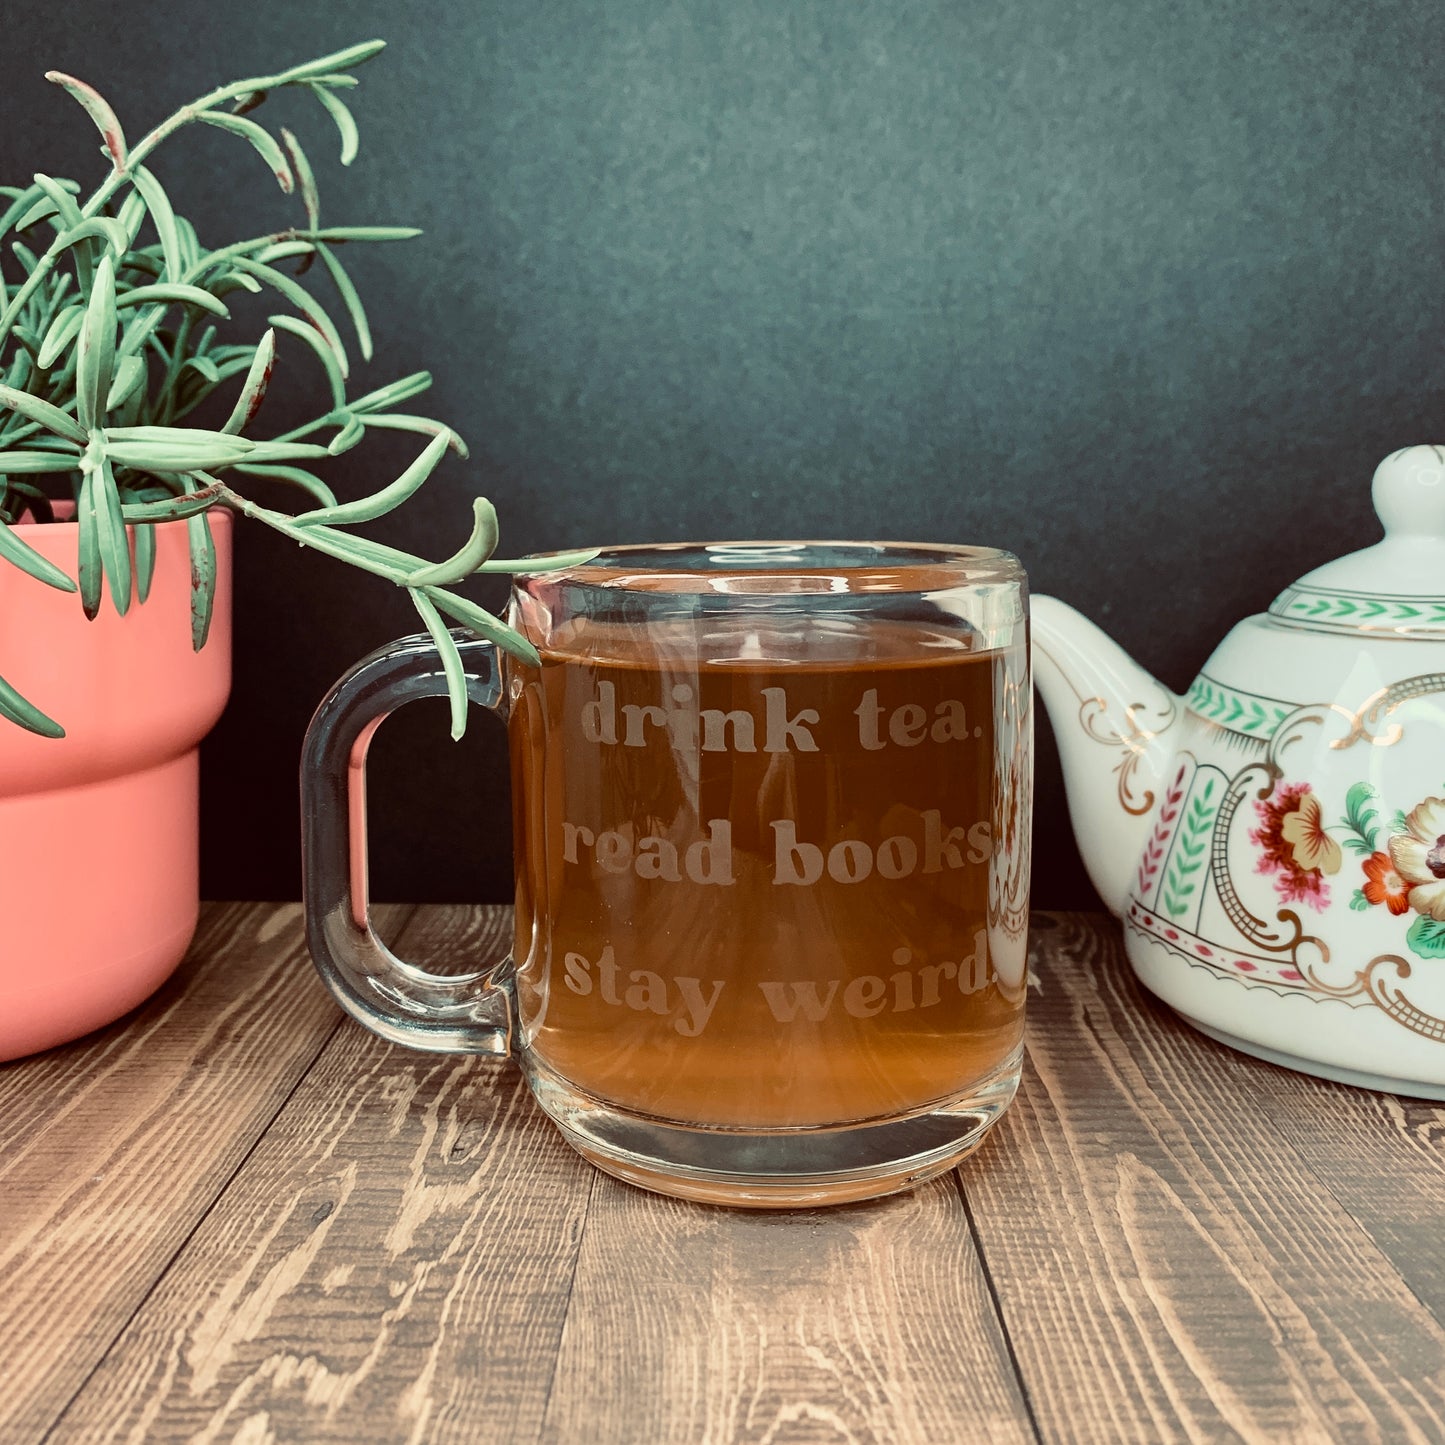 Drink Tea, Read Books, Stay Weird Glass Mug